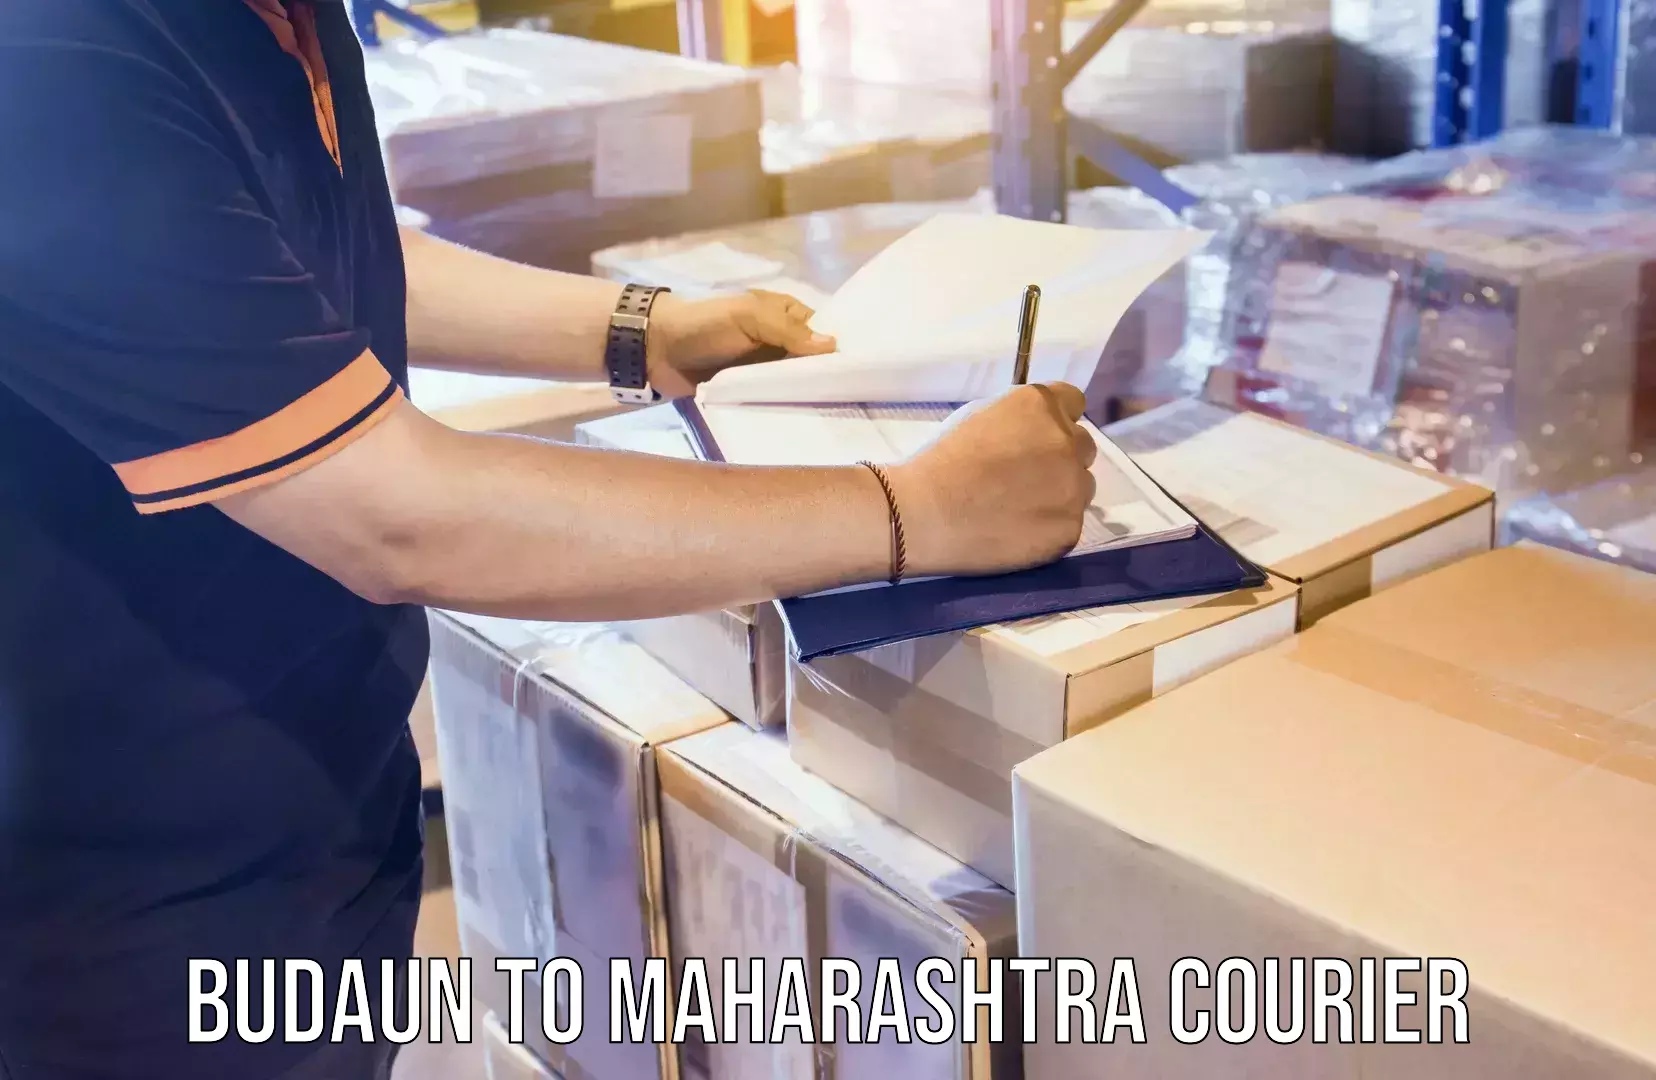 Delivery service partnership Budaun to Maharashtra